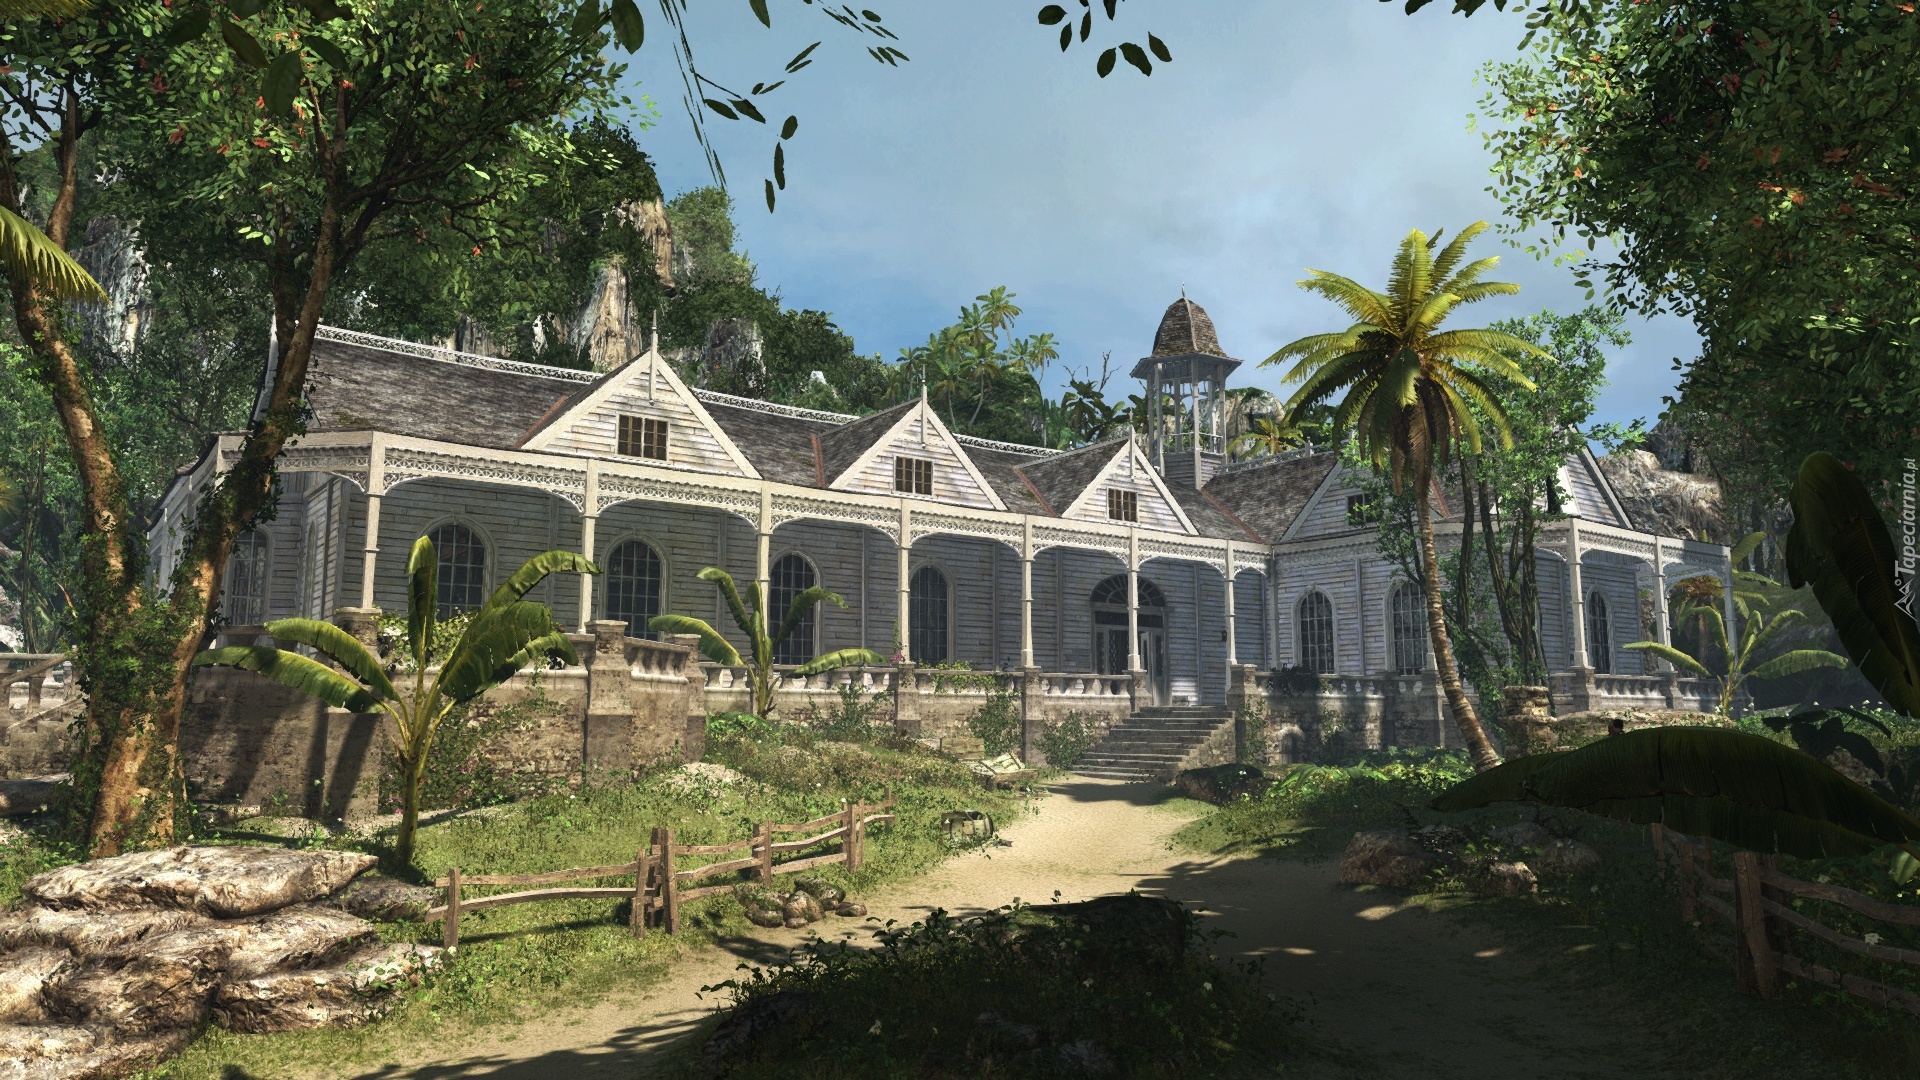 Assassins Creed IV Black Flag, Rezydencja, Architektura, Posiadłość, Karaiby